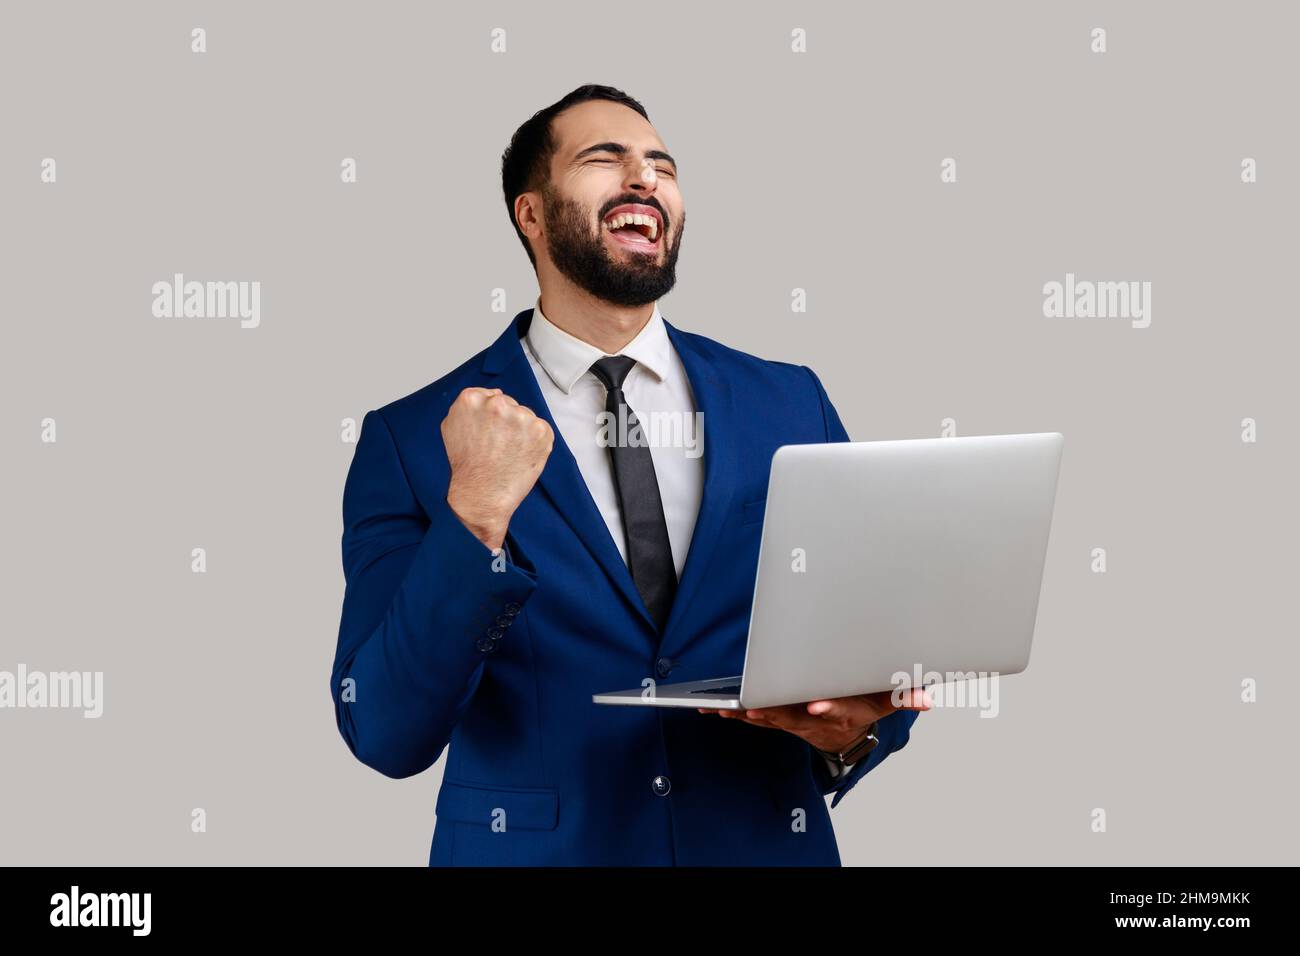 Portrait d'un homme d'affaires barbu enthousiaste criant avec joie et tenant un ordinateur portable, se réjouissant de la victoire, pariant en ligne, portant un costume de style officiel. Prise de vue en studio isolée sur fond gris. Banque D'Images